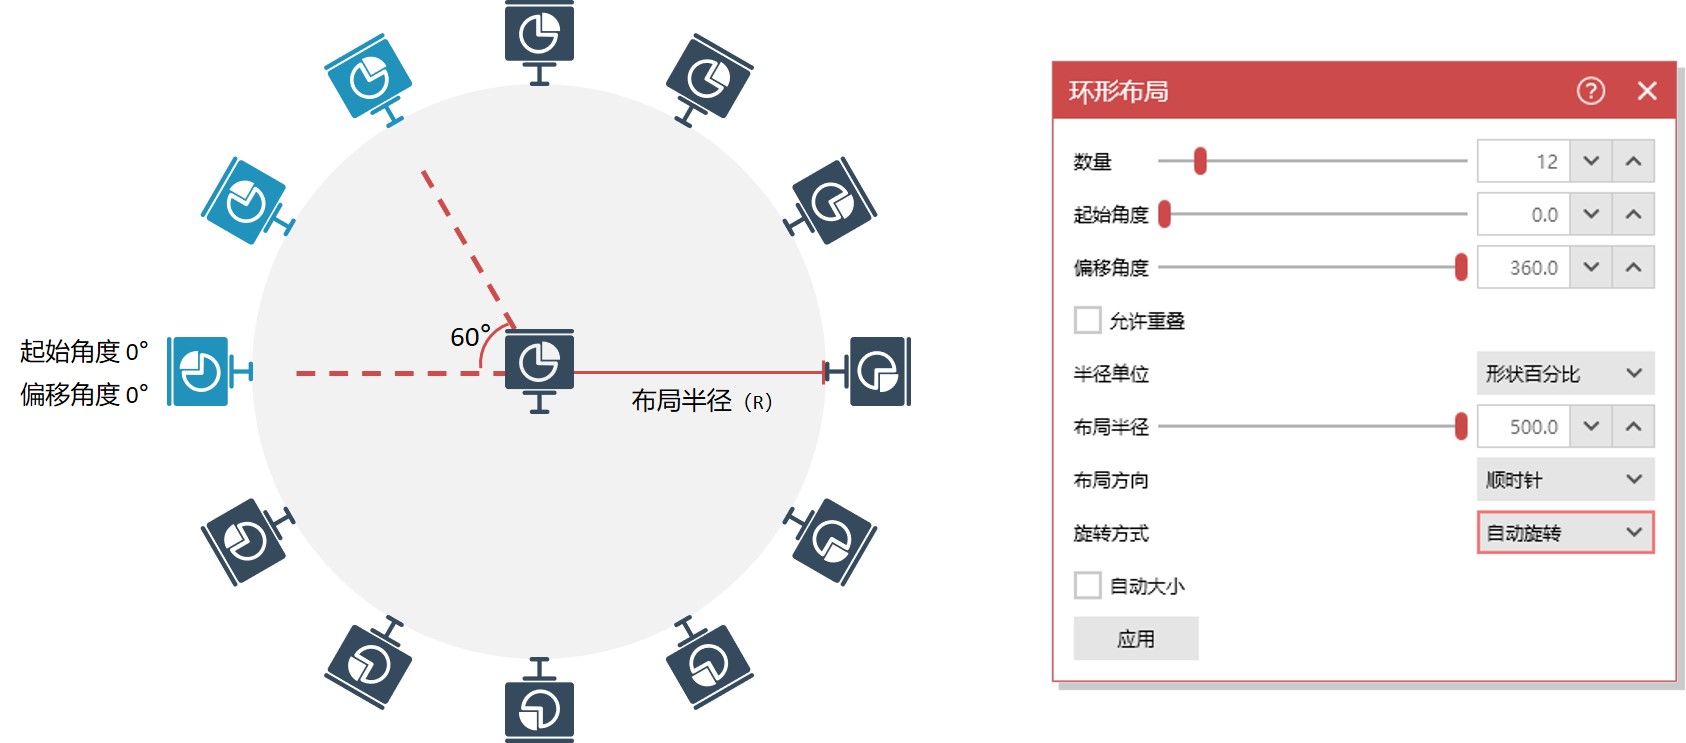 iSlide for mac 1.2.0中文版 ppt设计神器